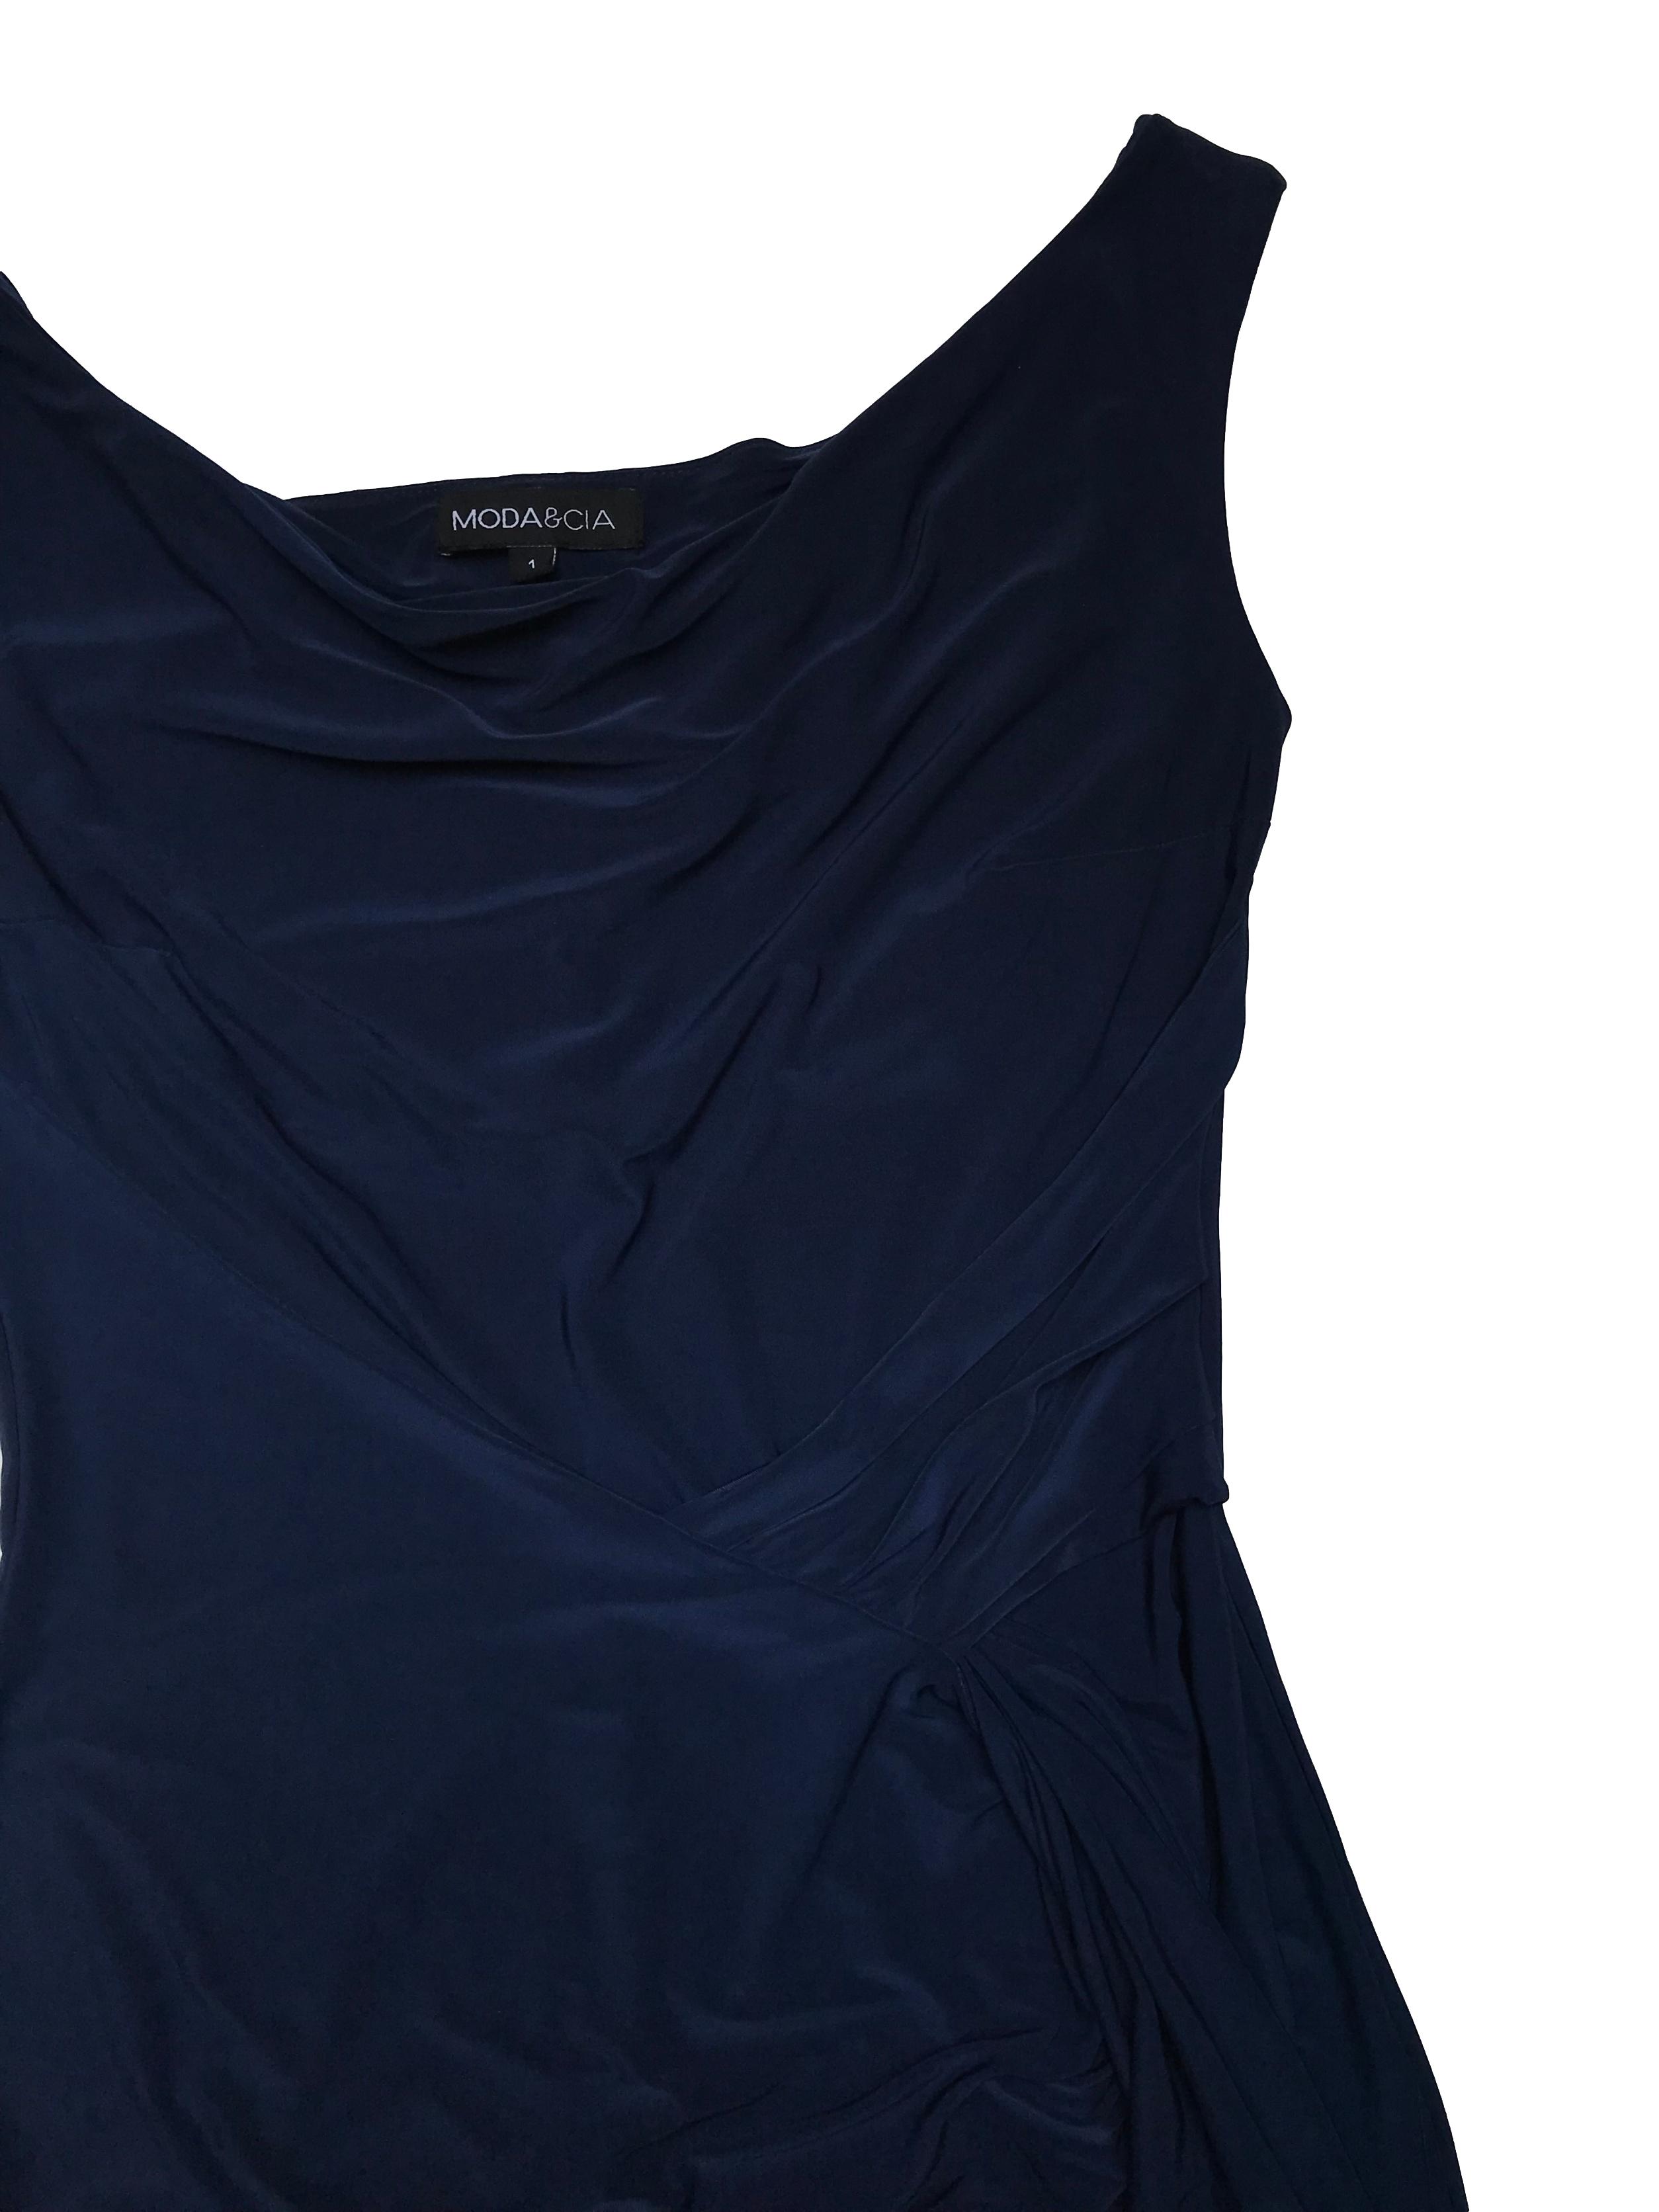 Vestido Moda&cia de tela stretch azul, detalles drapeados y cruzados en el cuerpo, forro en el pecho. Busto 86cm sin estirar Largo 90-95cm